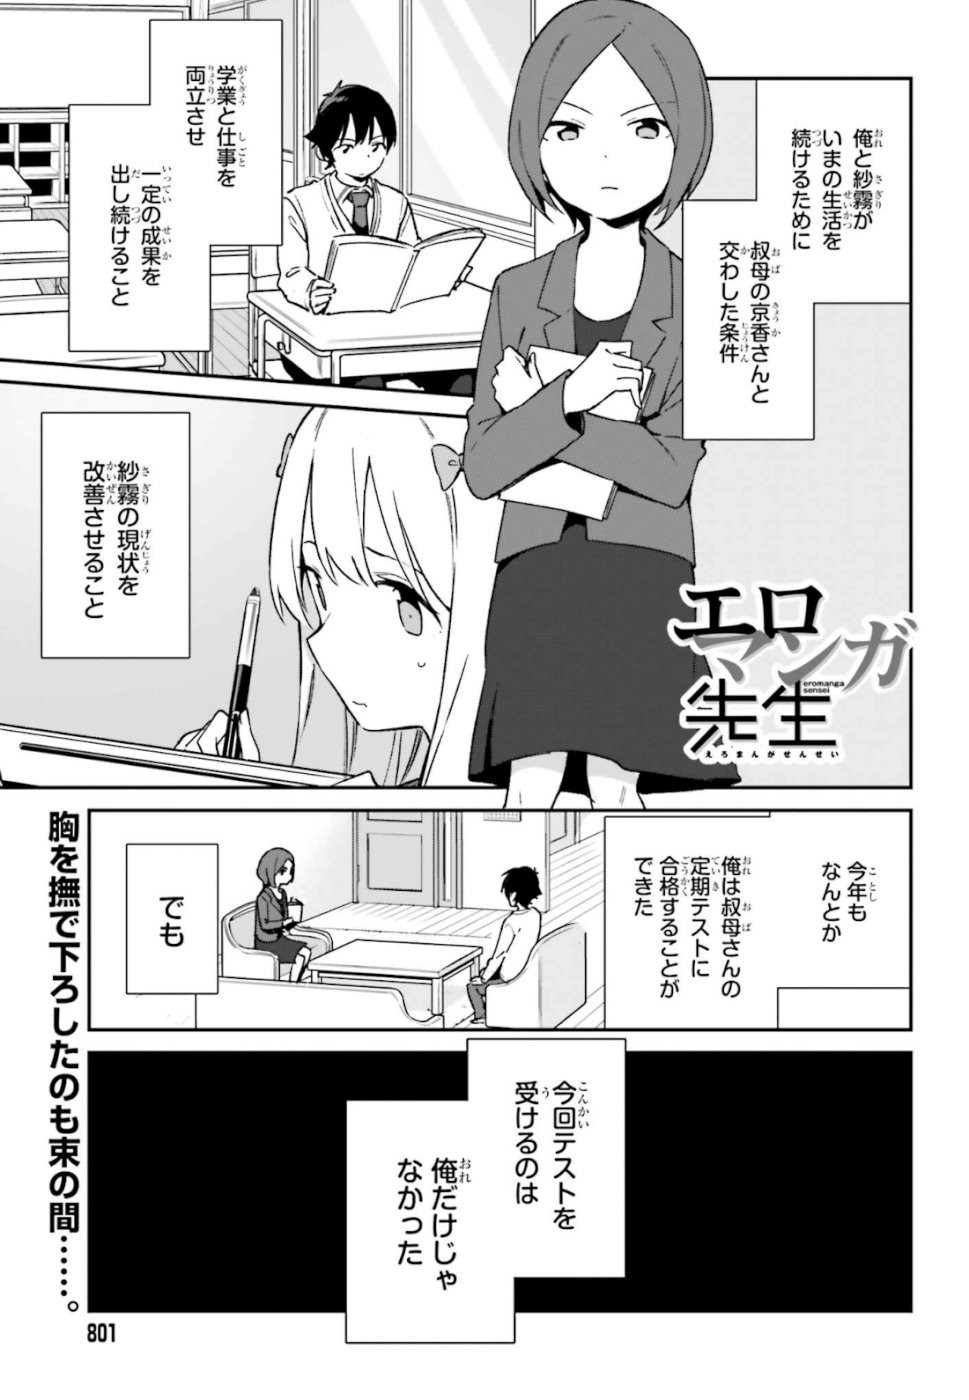 Ero Manga Sensei - Chapter 61 - Page 1